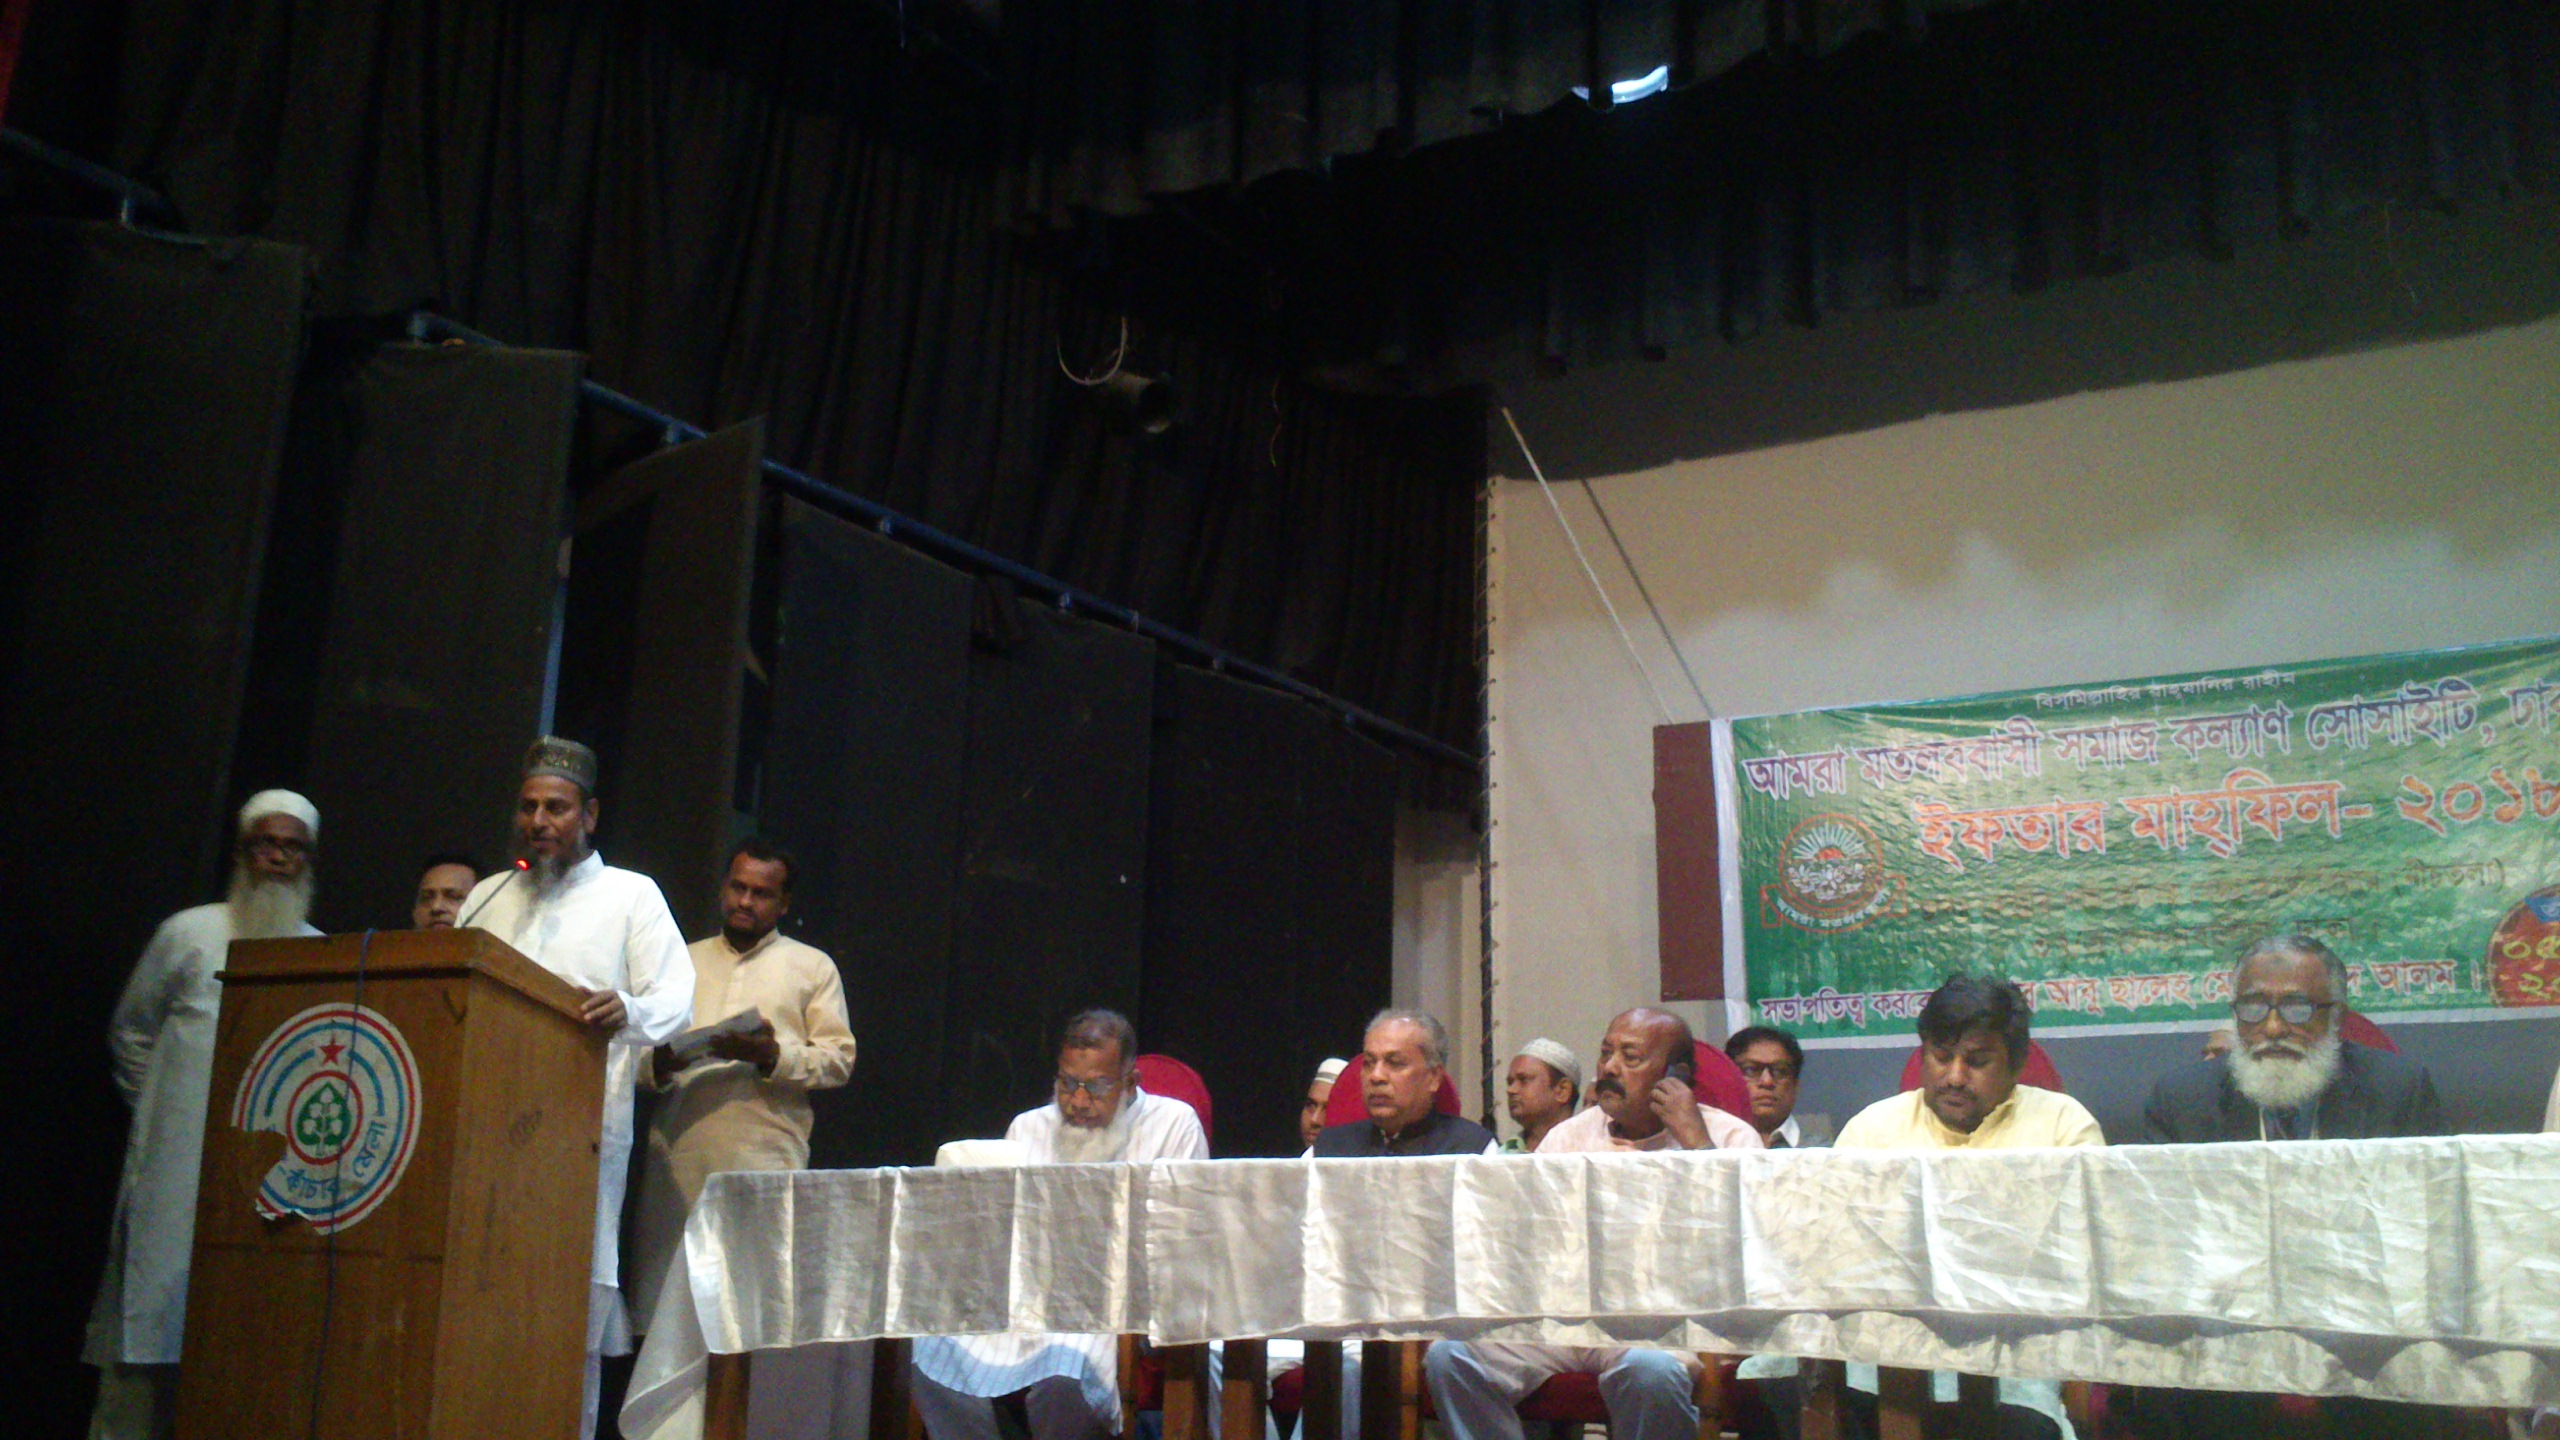 আমরা মতলববাসি সমাজ কল্যান সোসাইটি, ঢাকা এর উদ্যোগে ইফতার মাহফিল অনুষ্ঠিত